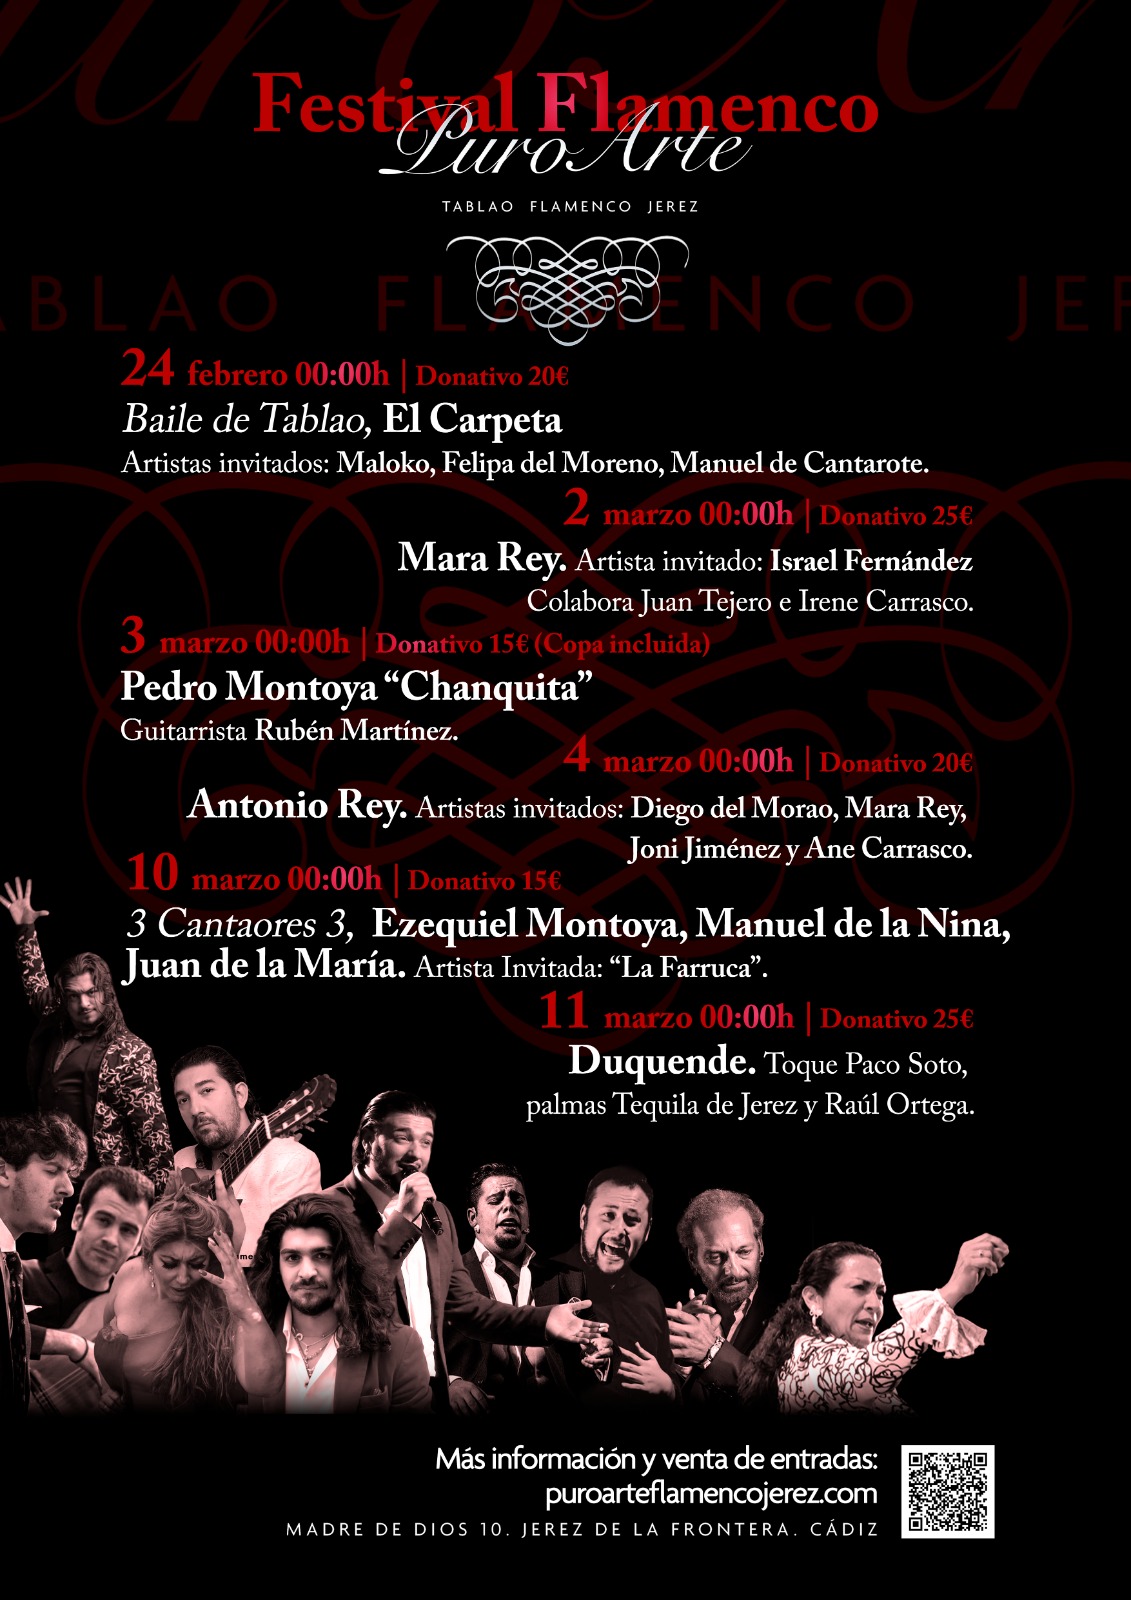 Puro Arte Flamenco Festival in Jerez